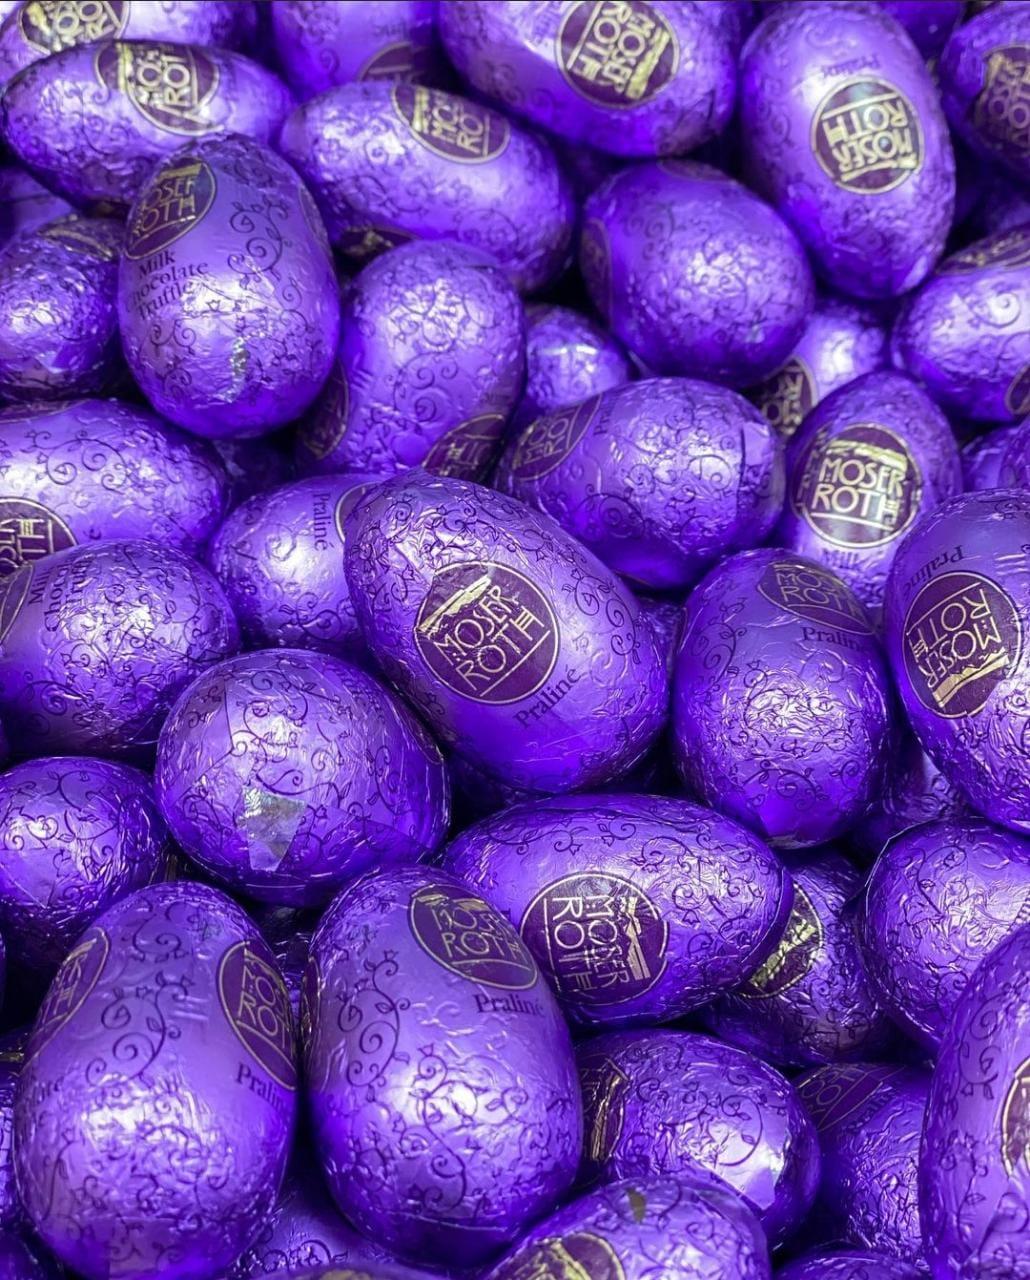 Яйцо шоколадное Мозер Рот Moser Roth с начинкой Praline ореховый крем (Фиолетовые) 1 кг, фото 1